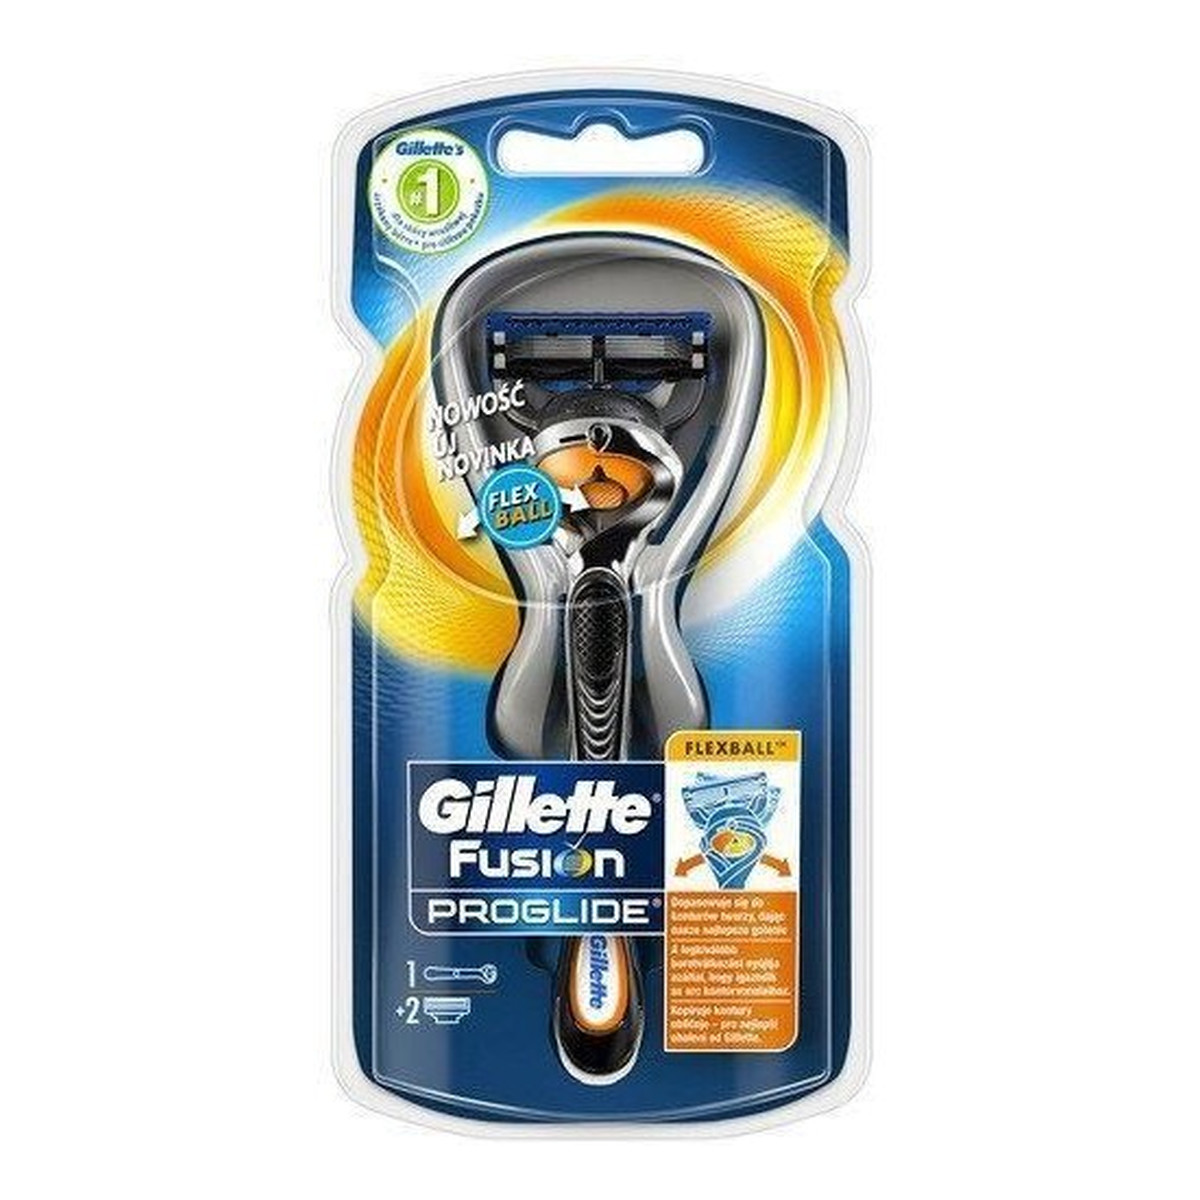 Gillette Fusion Proglide maszynka do golenia 2 wkłady